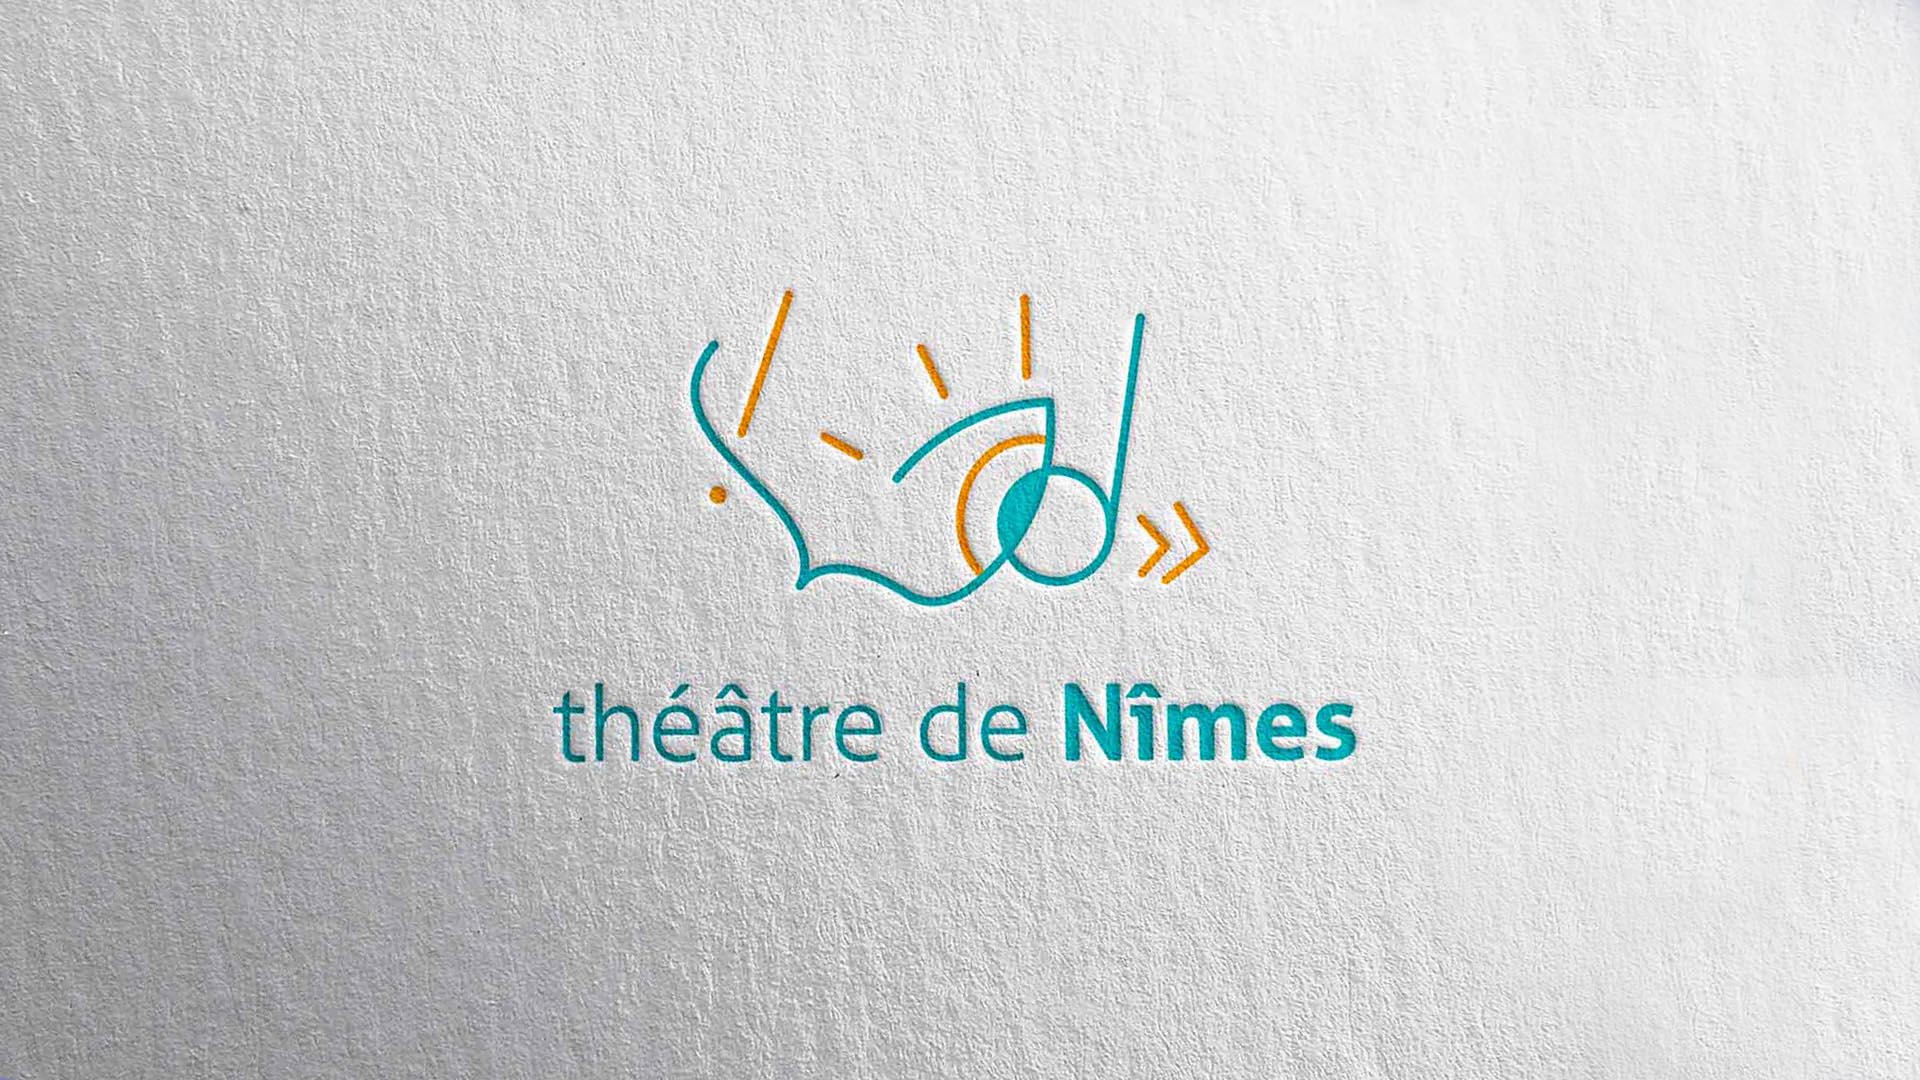 Théâtre de Nîmes - Miniature